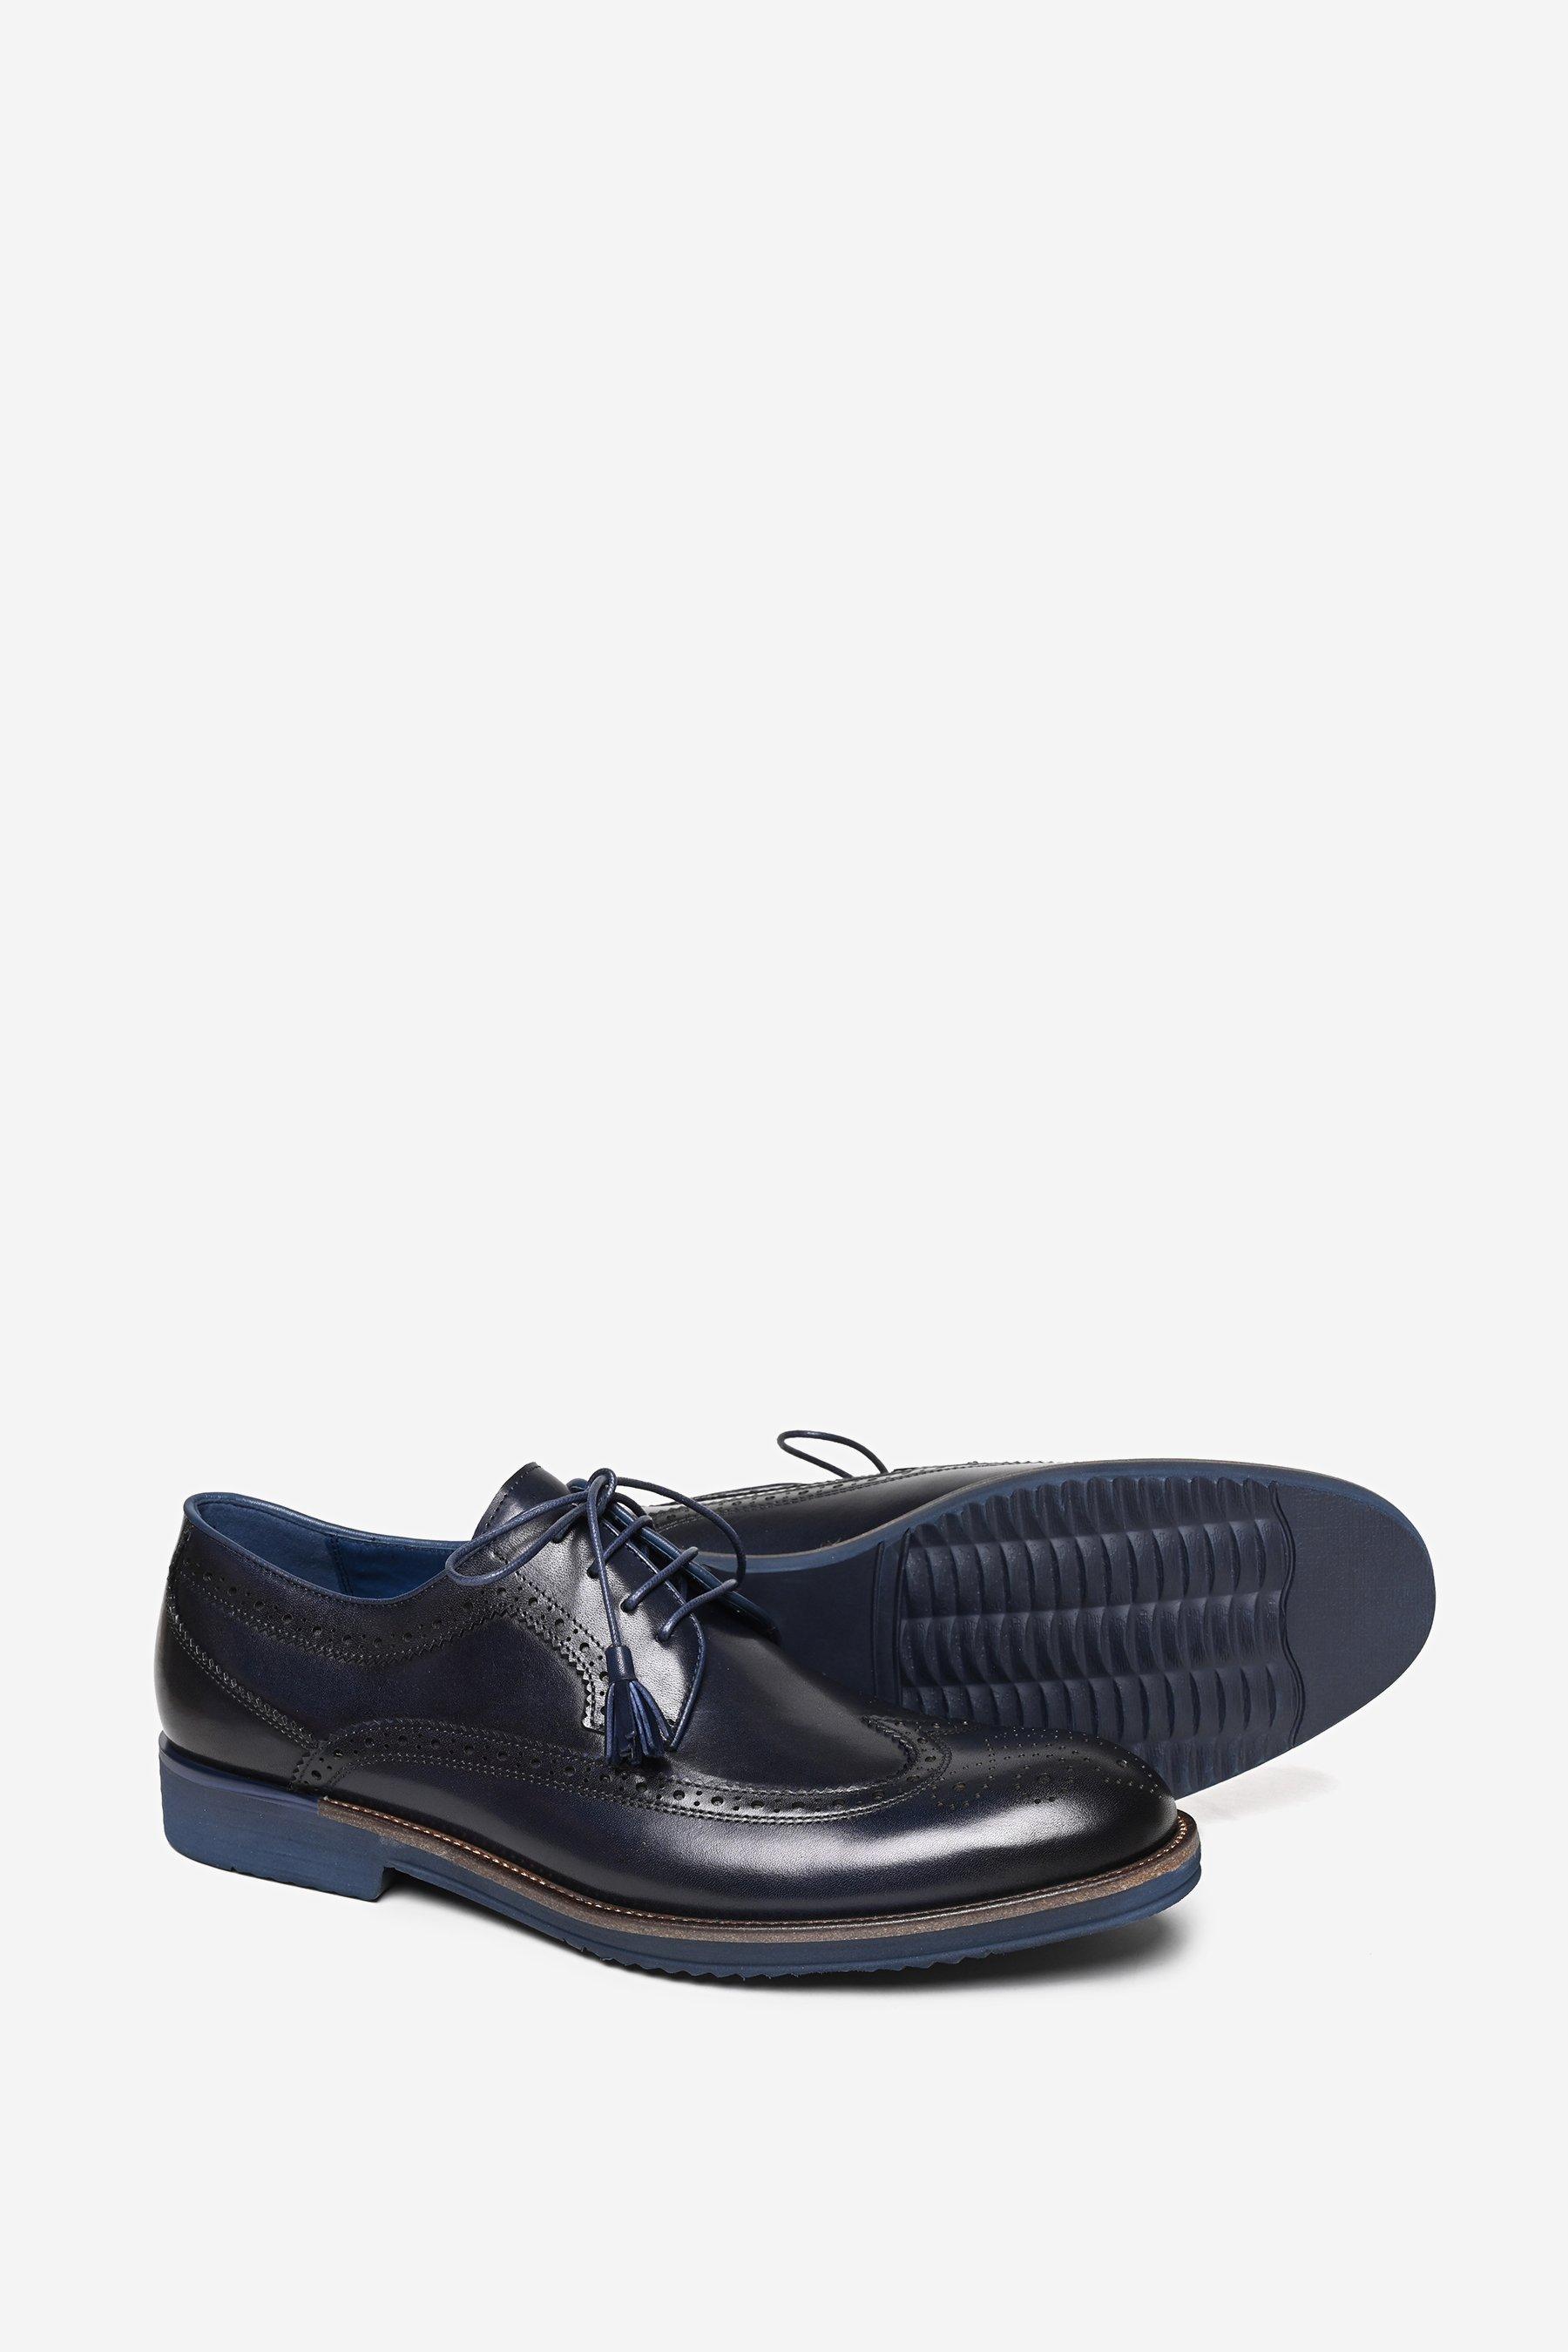 Кожаные туфли-броги премиум-класса 'Johnsons' Alexander Pace, черный